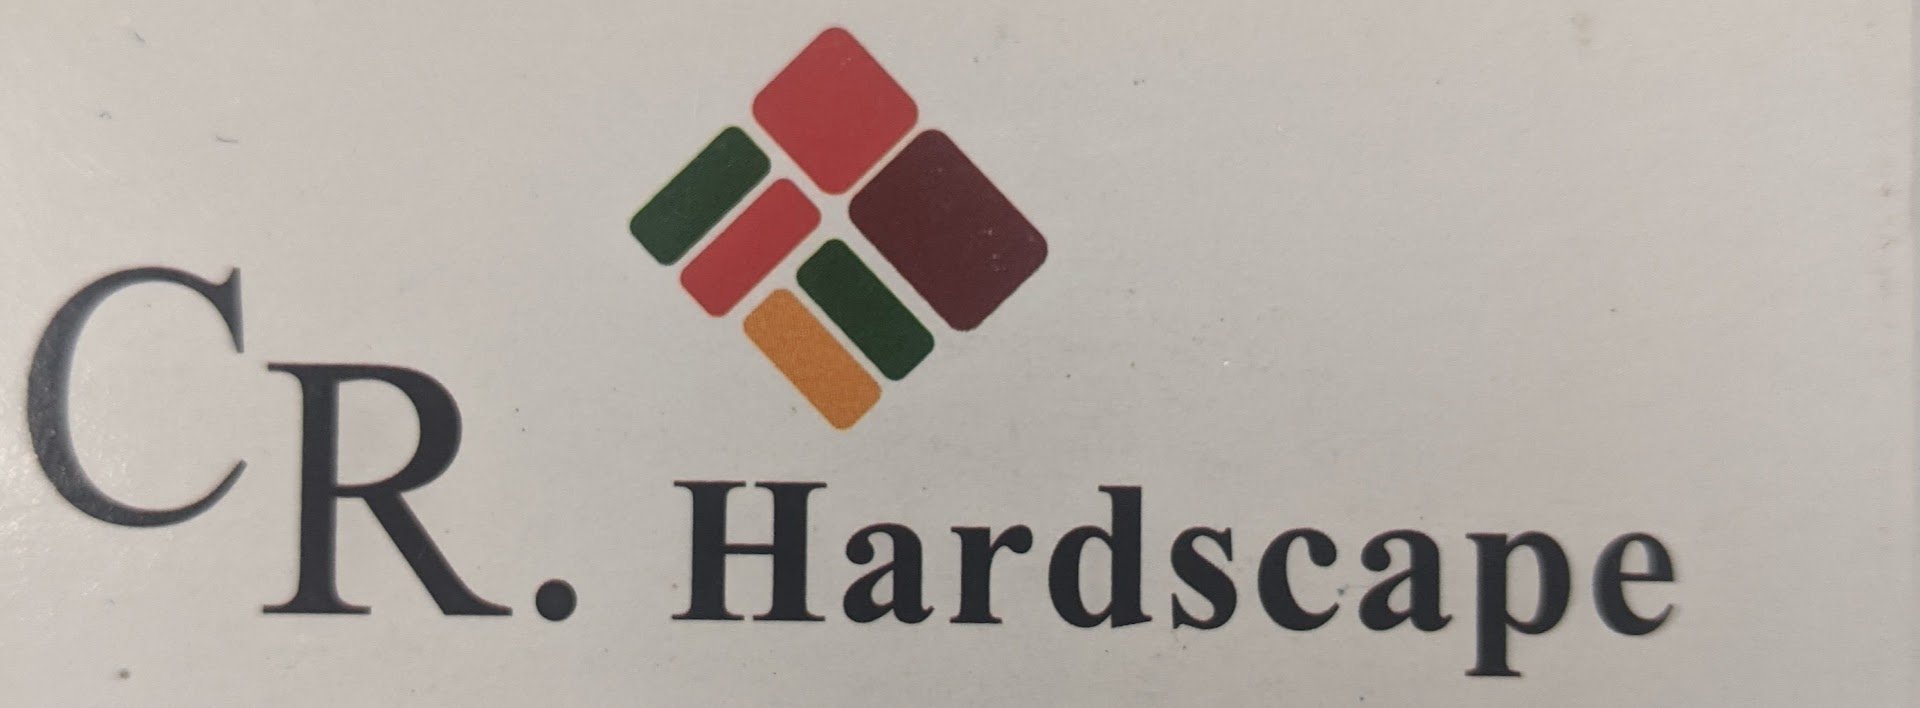 CR Hardscape Logo